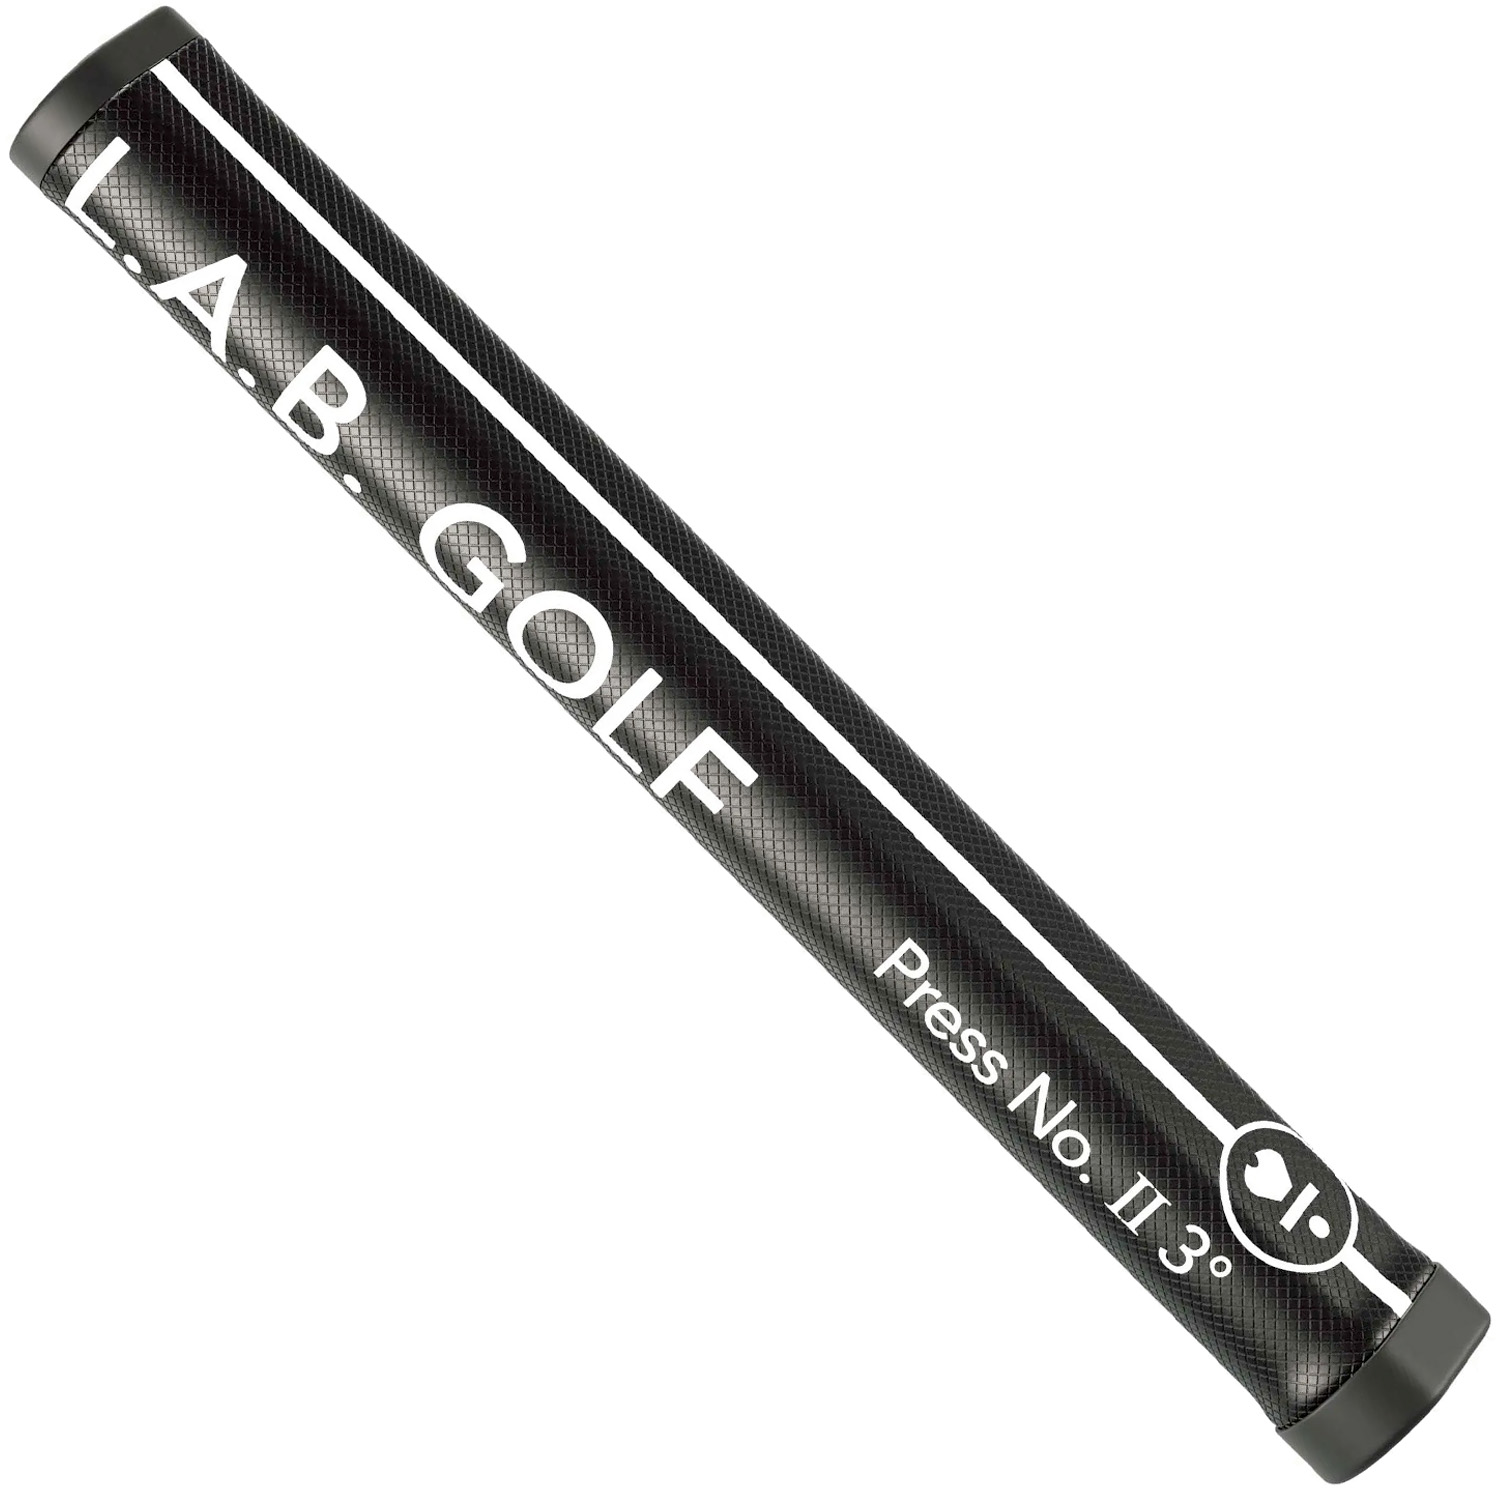 L.A.B. Golf Press II 3deg Putter Grip - Textured